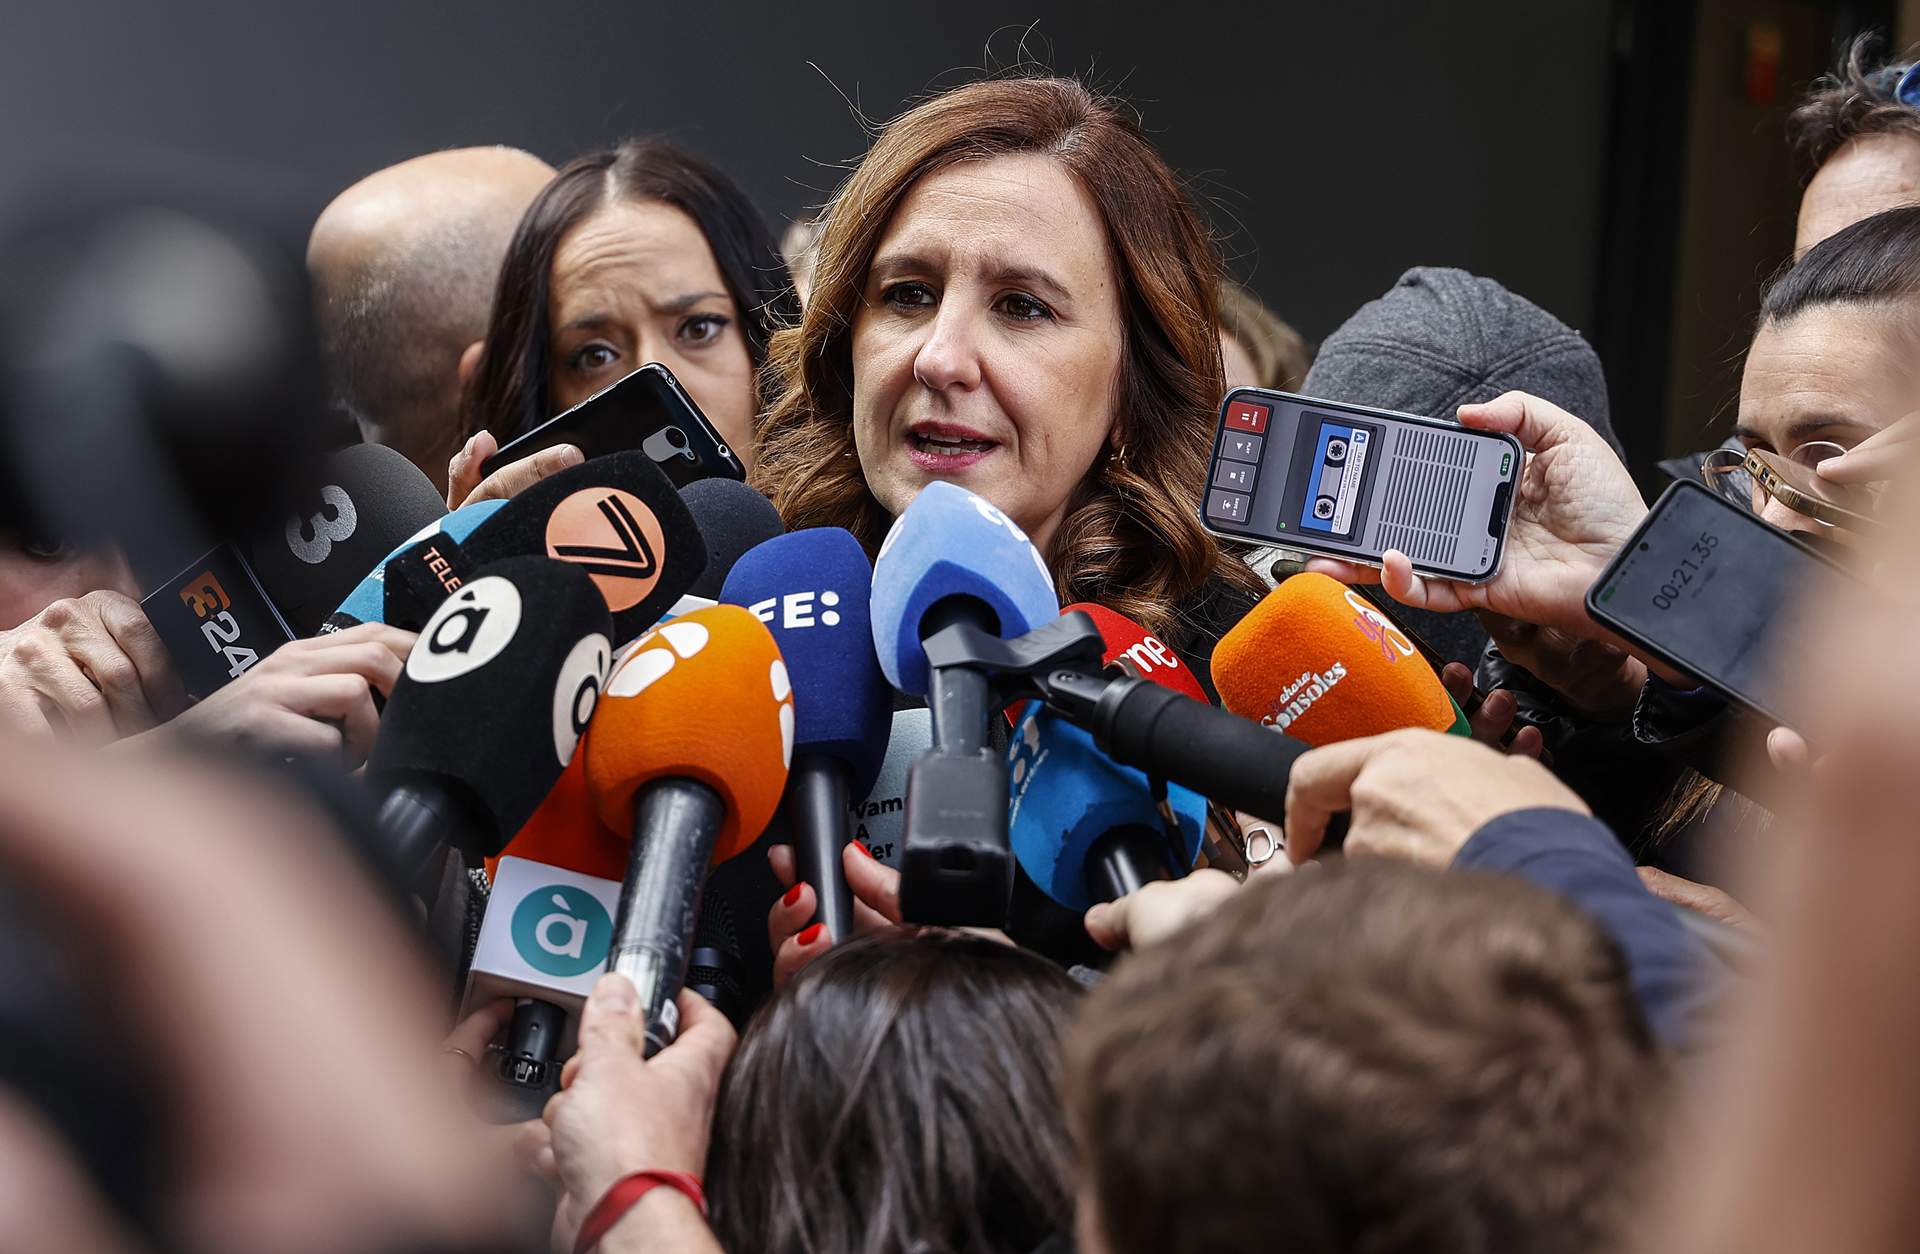 La alcaldesa de Valencia pide esperar a la resolución de Fiscalía sobre los tuits 